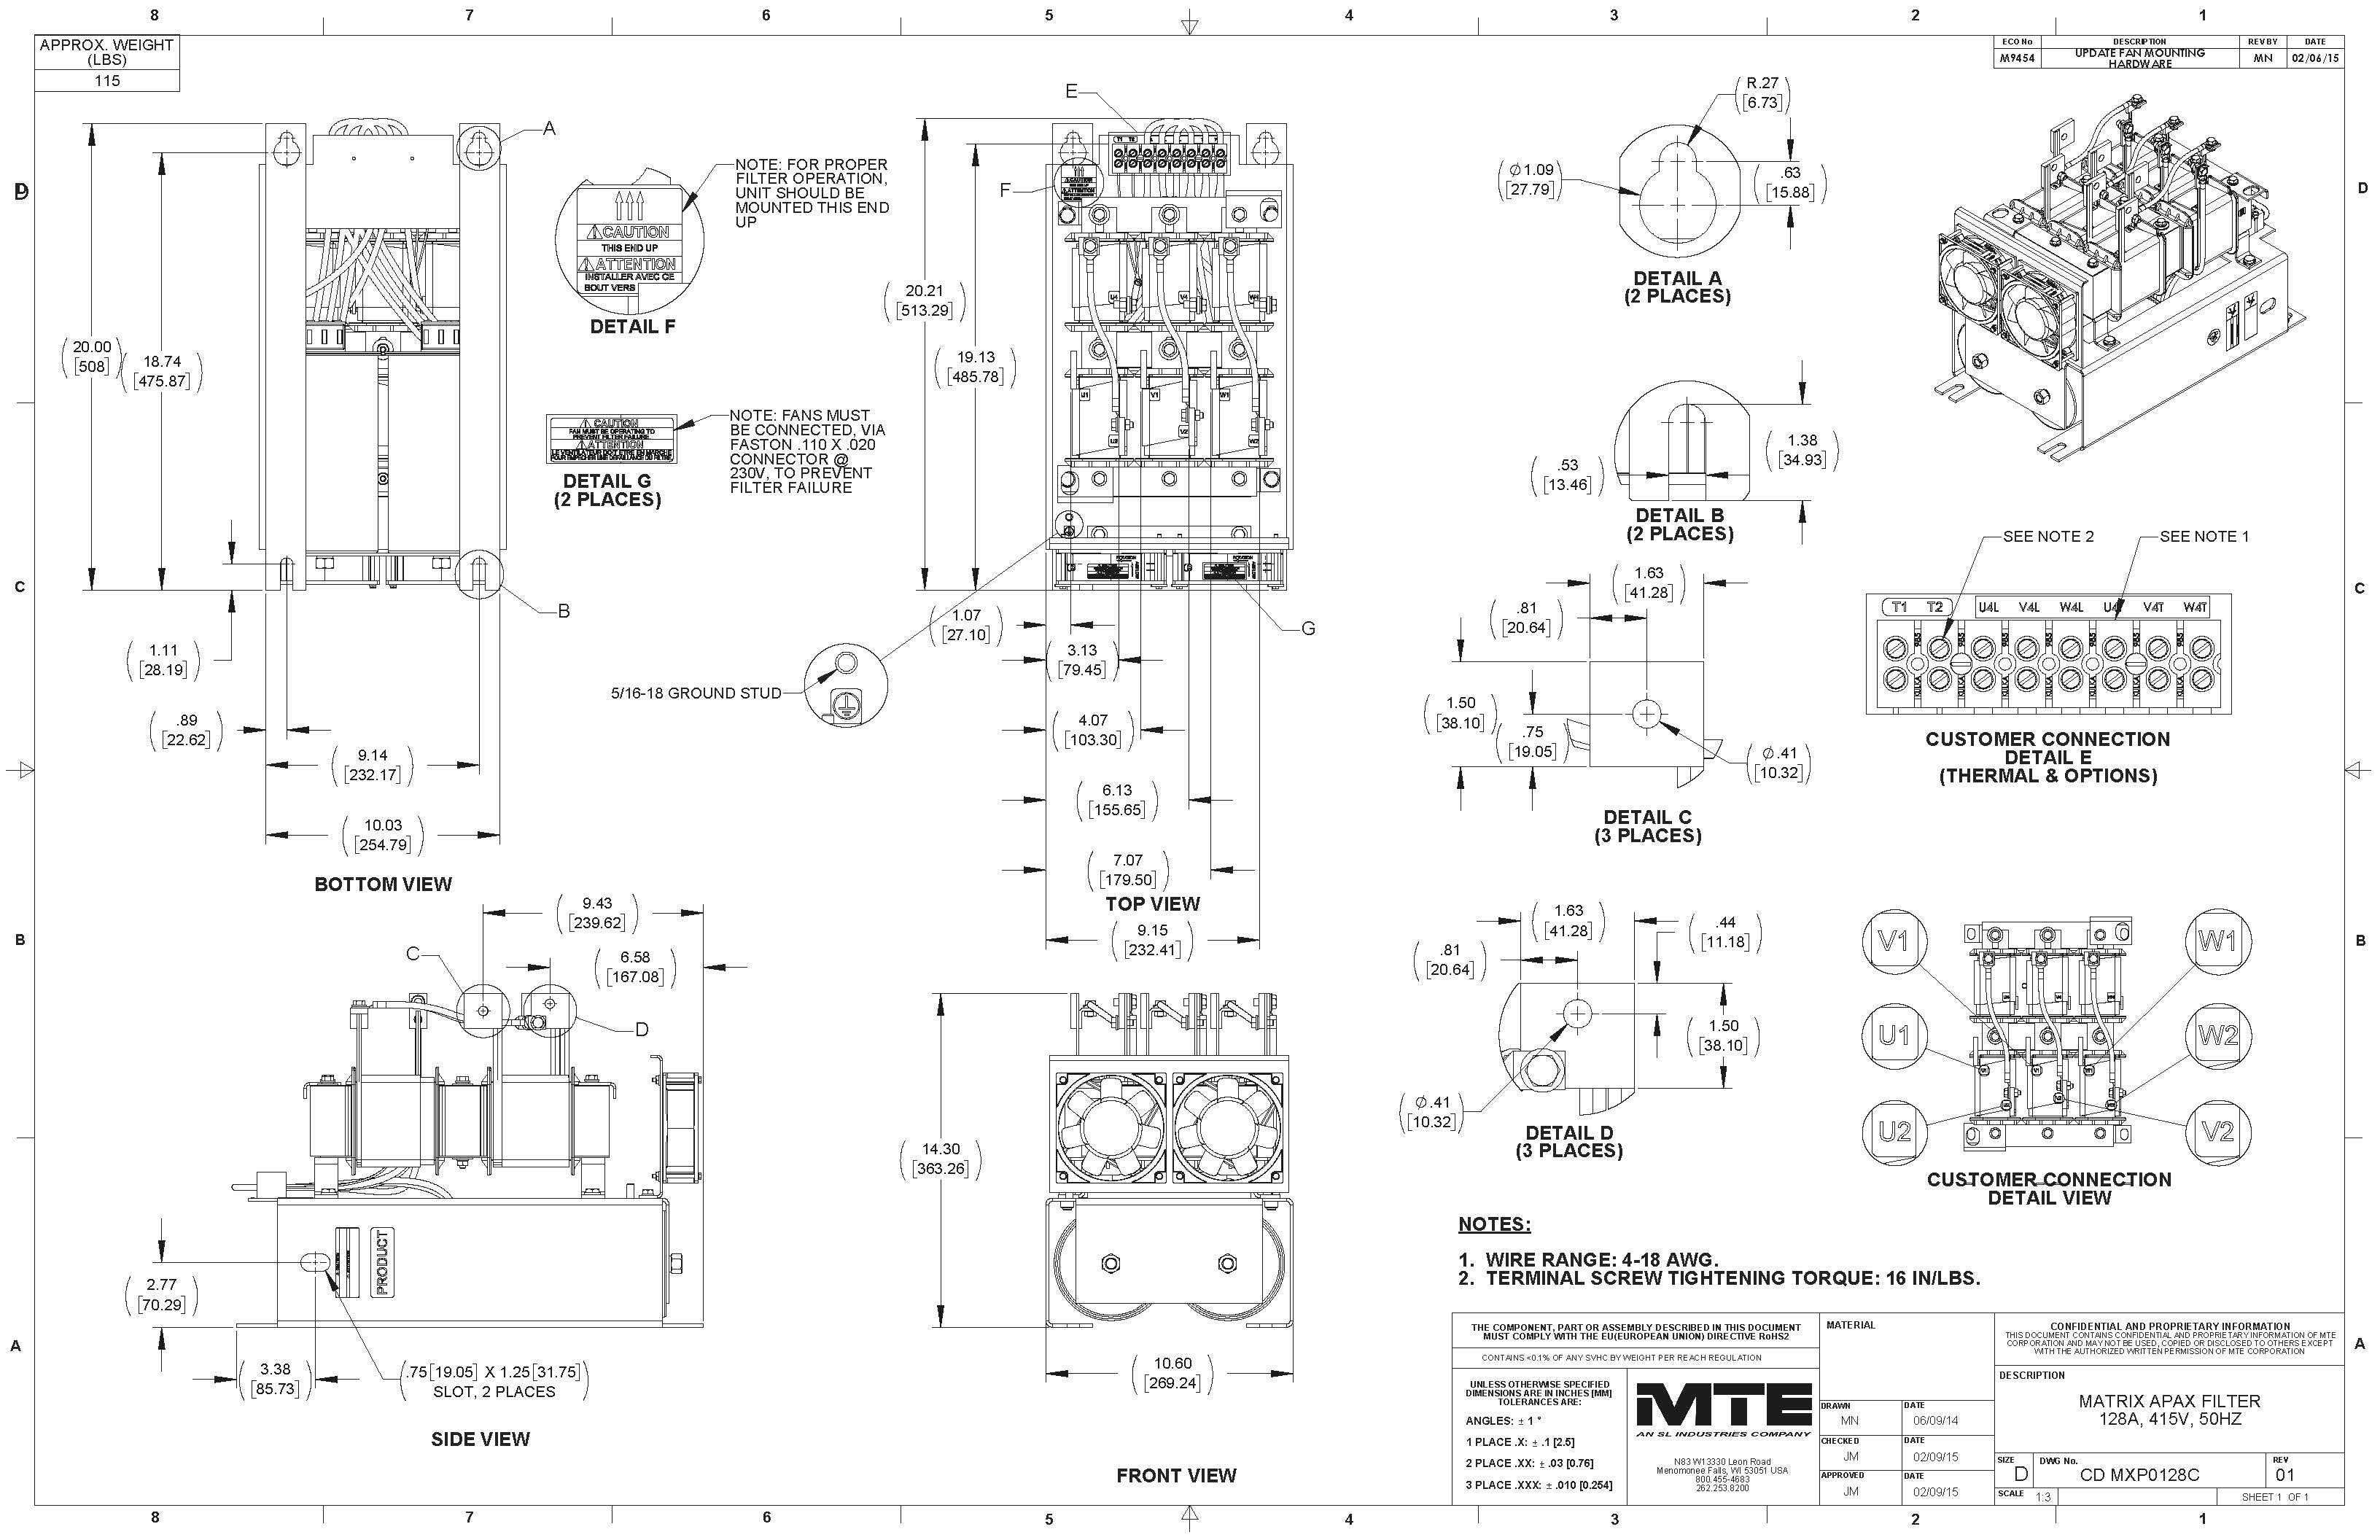 Image of an MTE Matrix filter MXP0128C